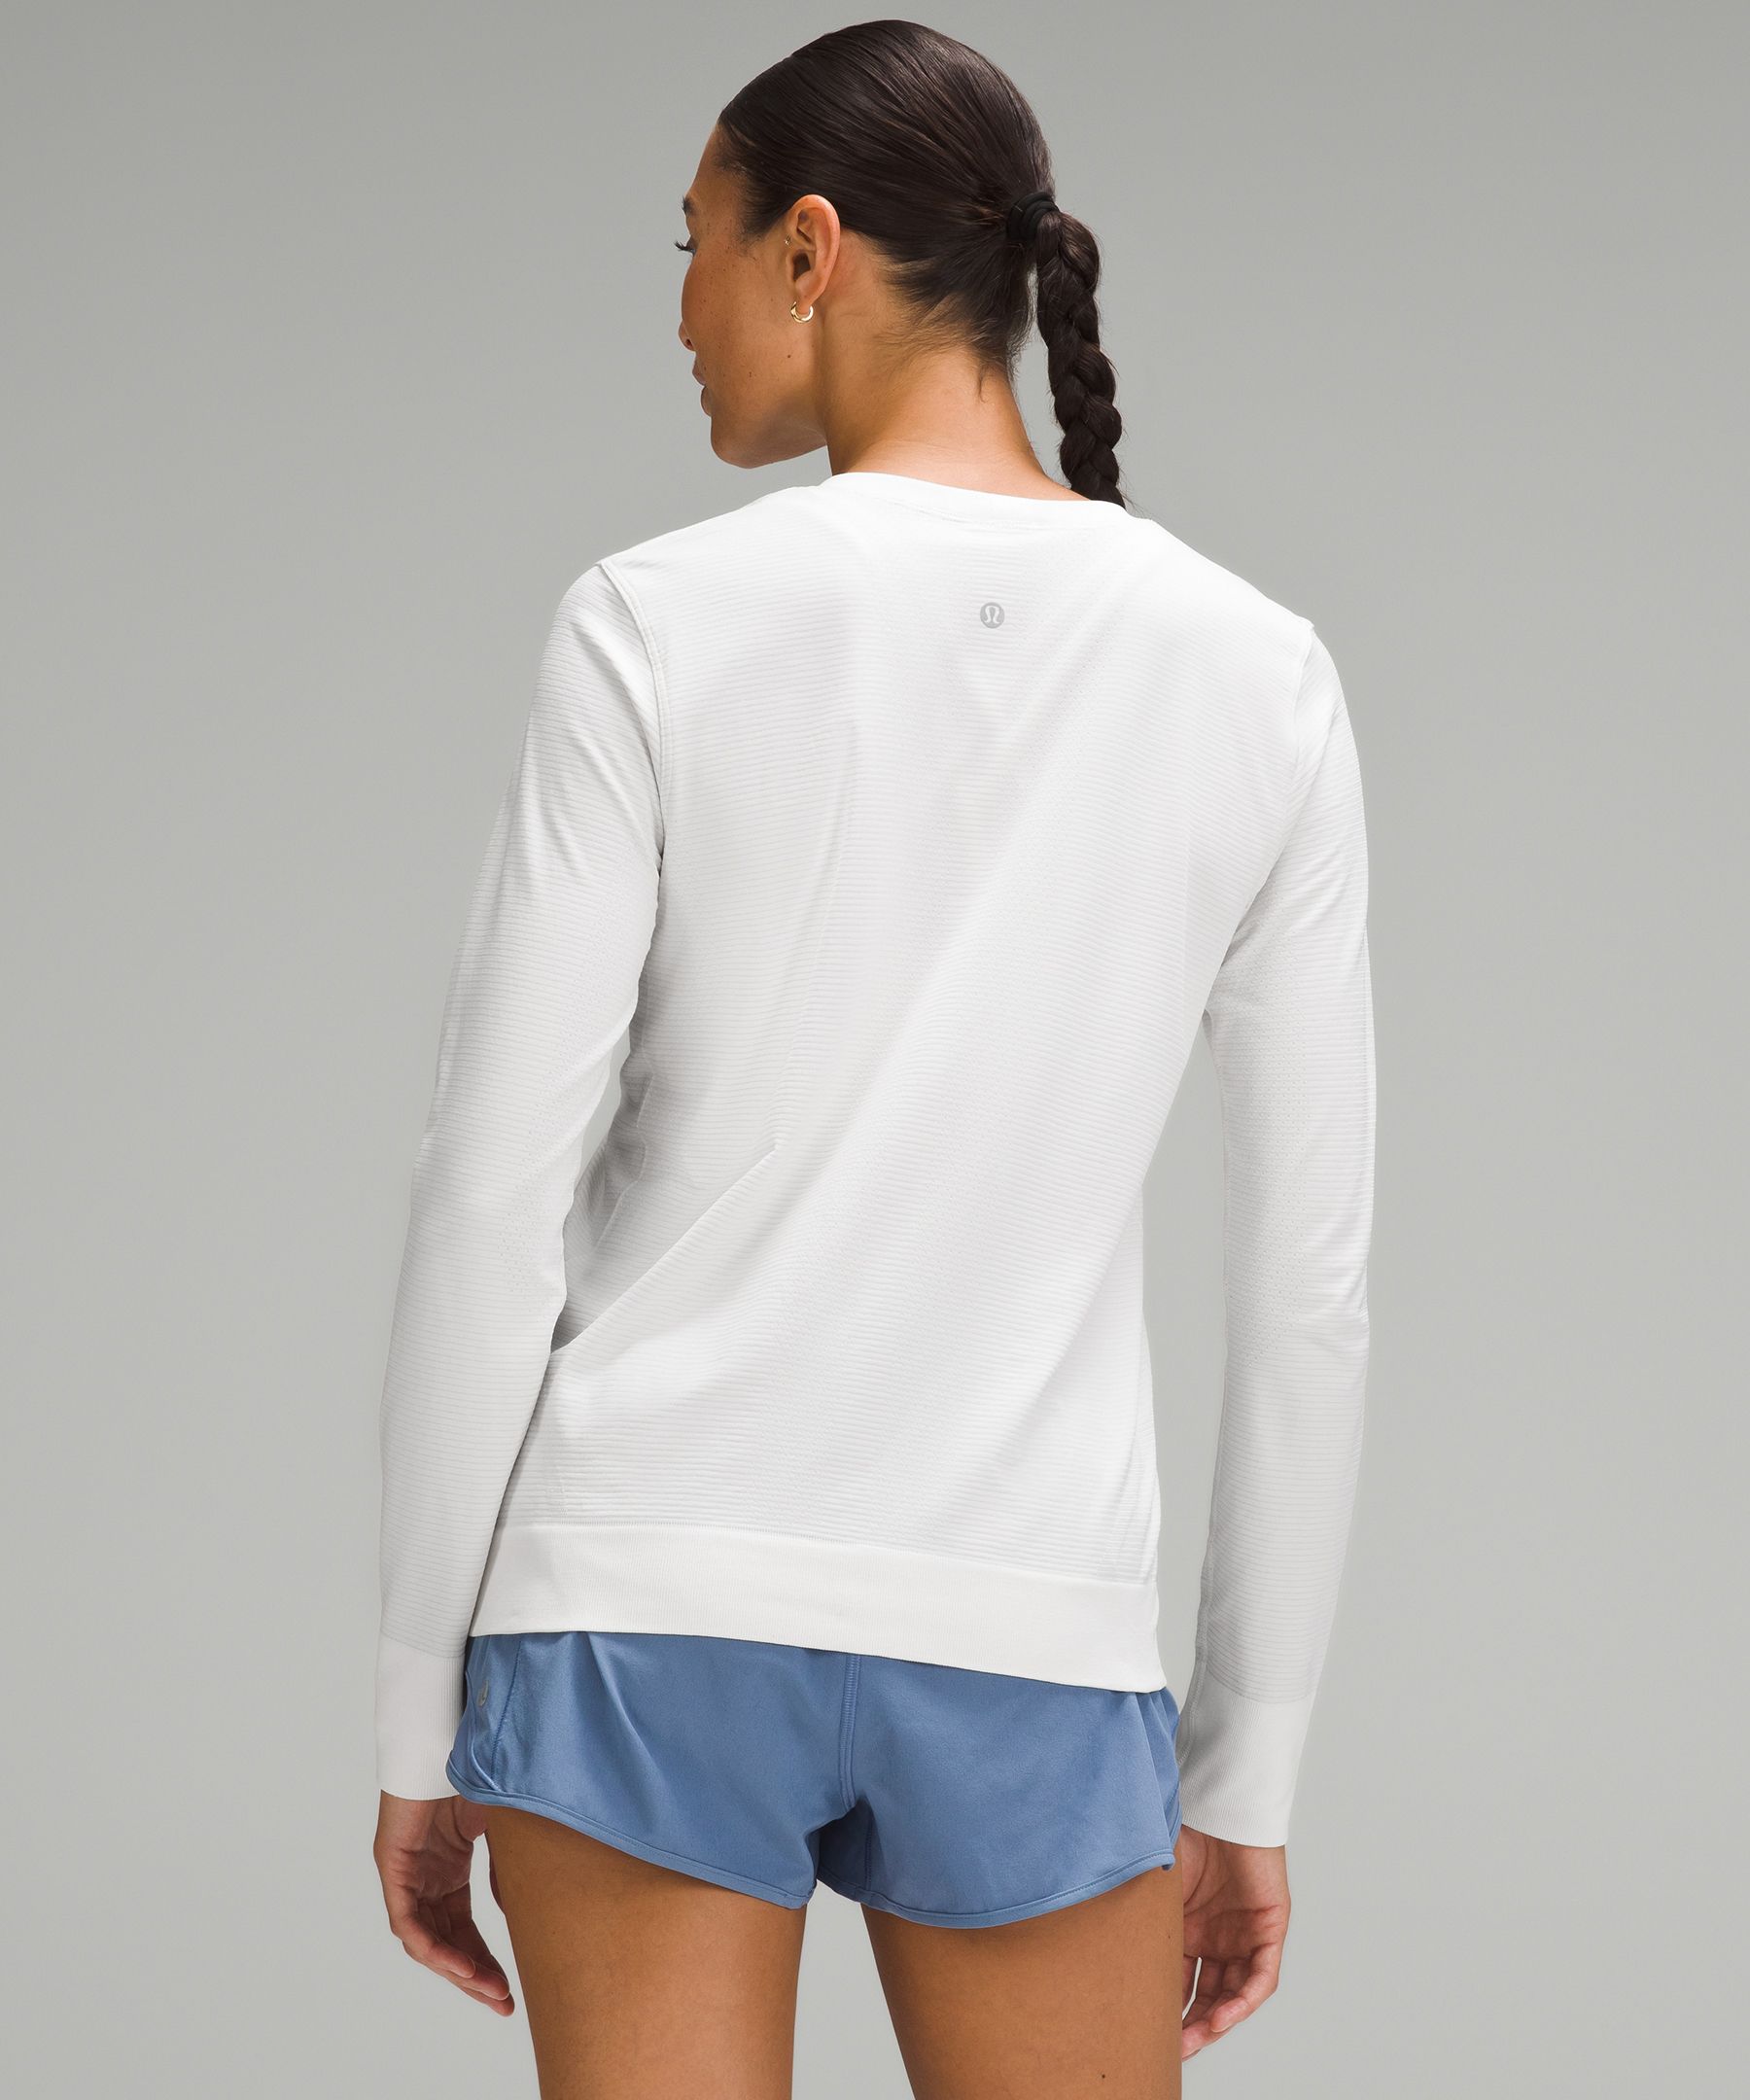 Lululemon Training Swiftly Relaxed Long-Sleeve Shirt - White - Size 4